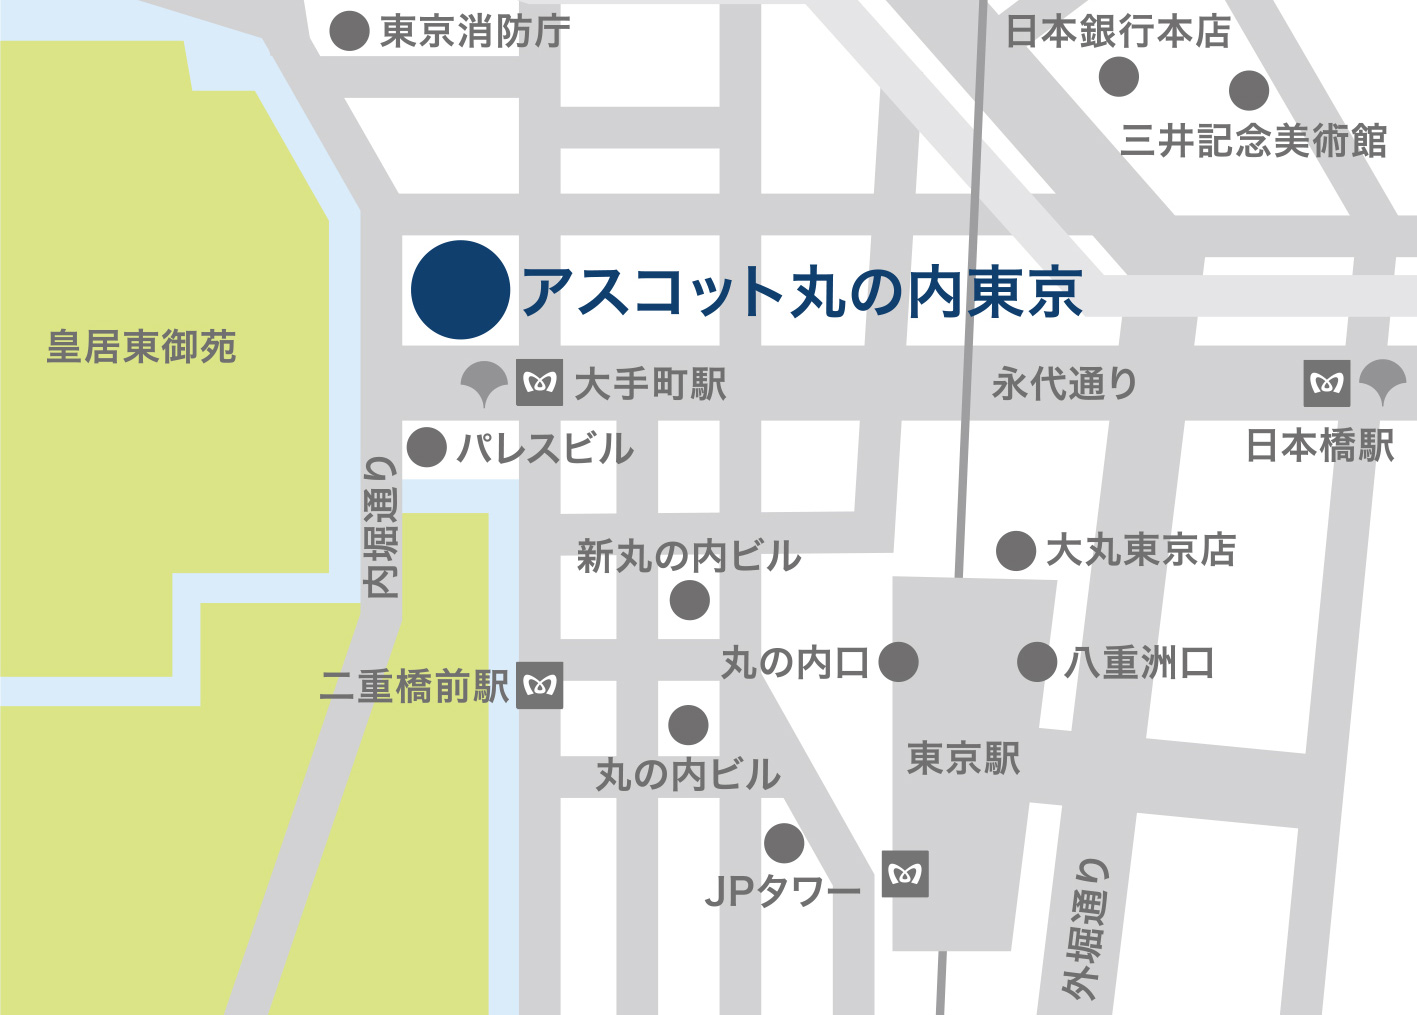 「アスコット丸の内東京」の周辺マップ